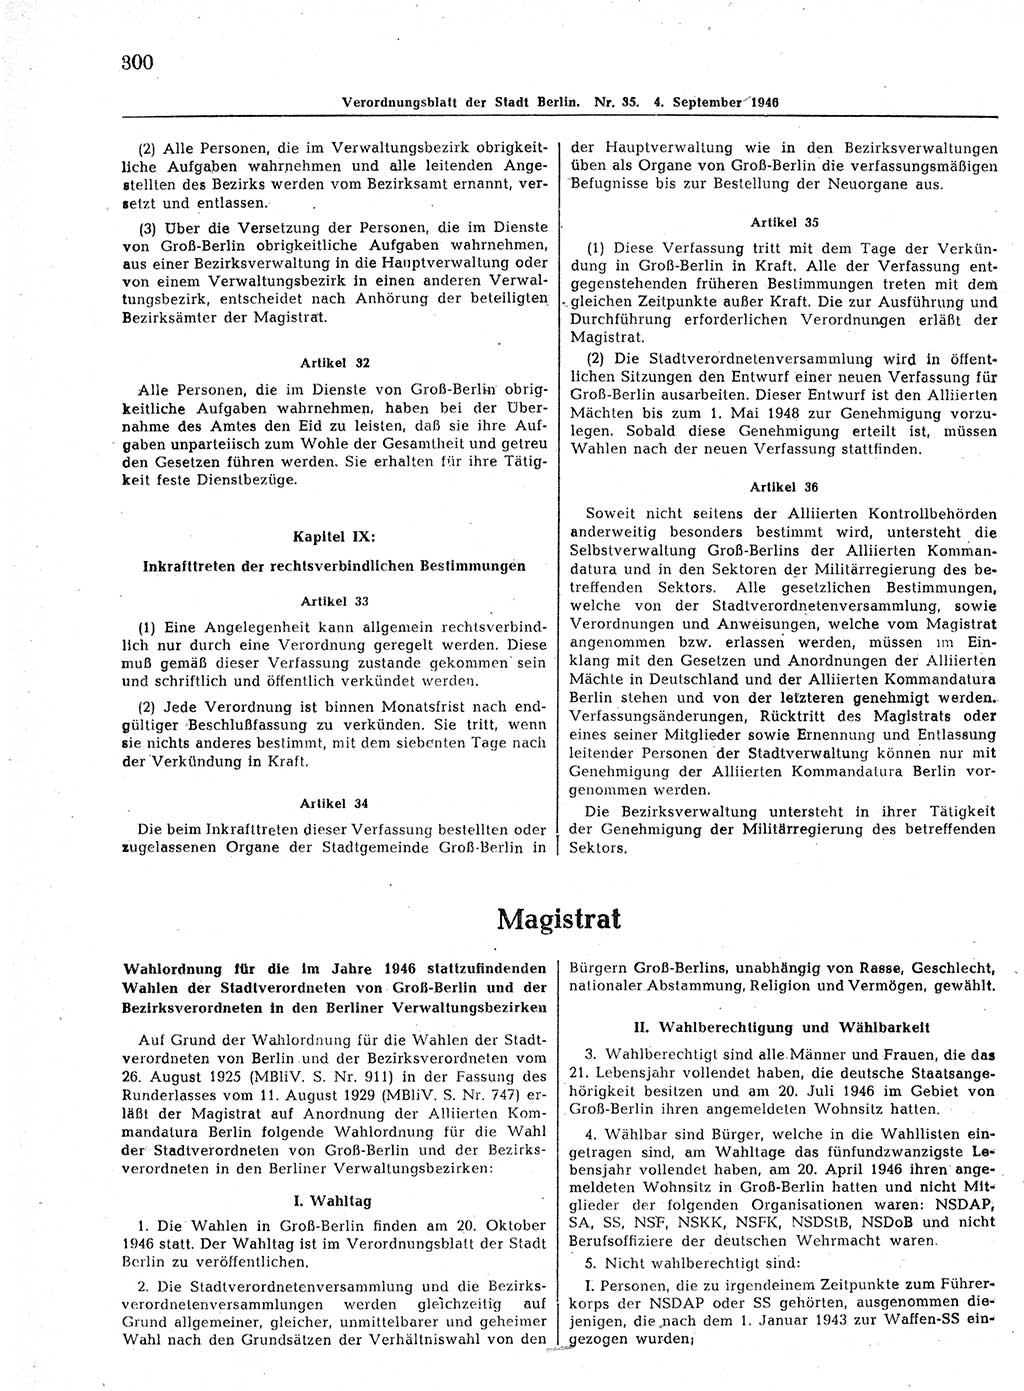 Verordnungsblatt (VOBl.) der Stadt Berlin, für Groß-Berlin 1946, Seite 300 (VOBl. Bln. 1946, S. 300)